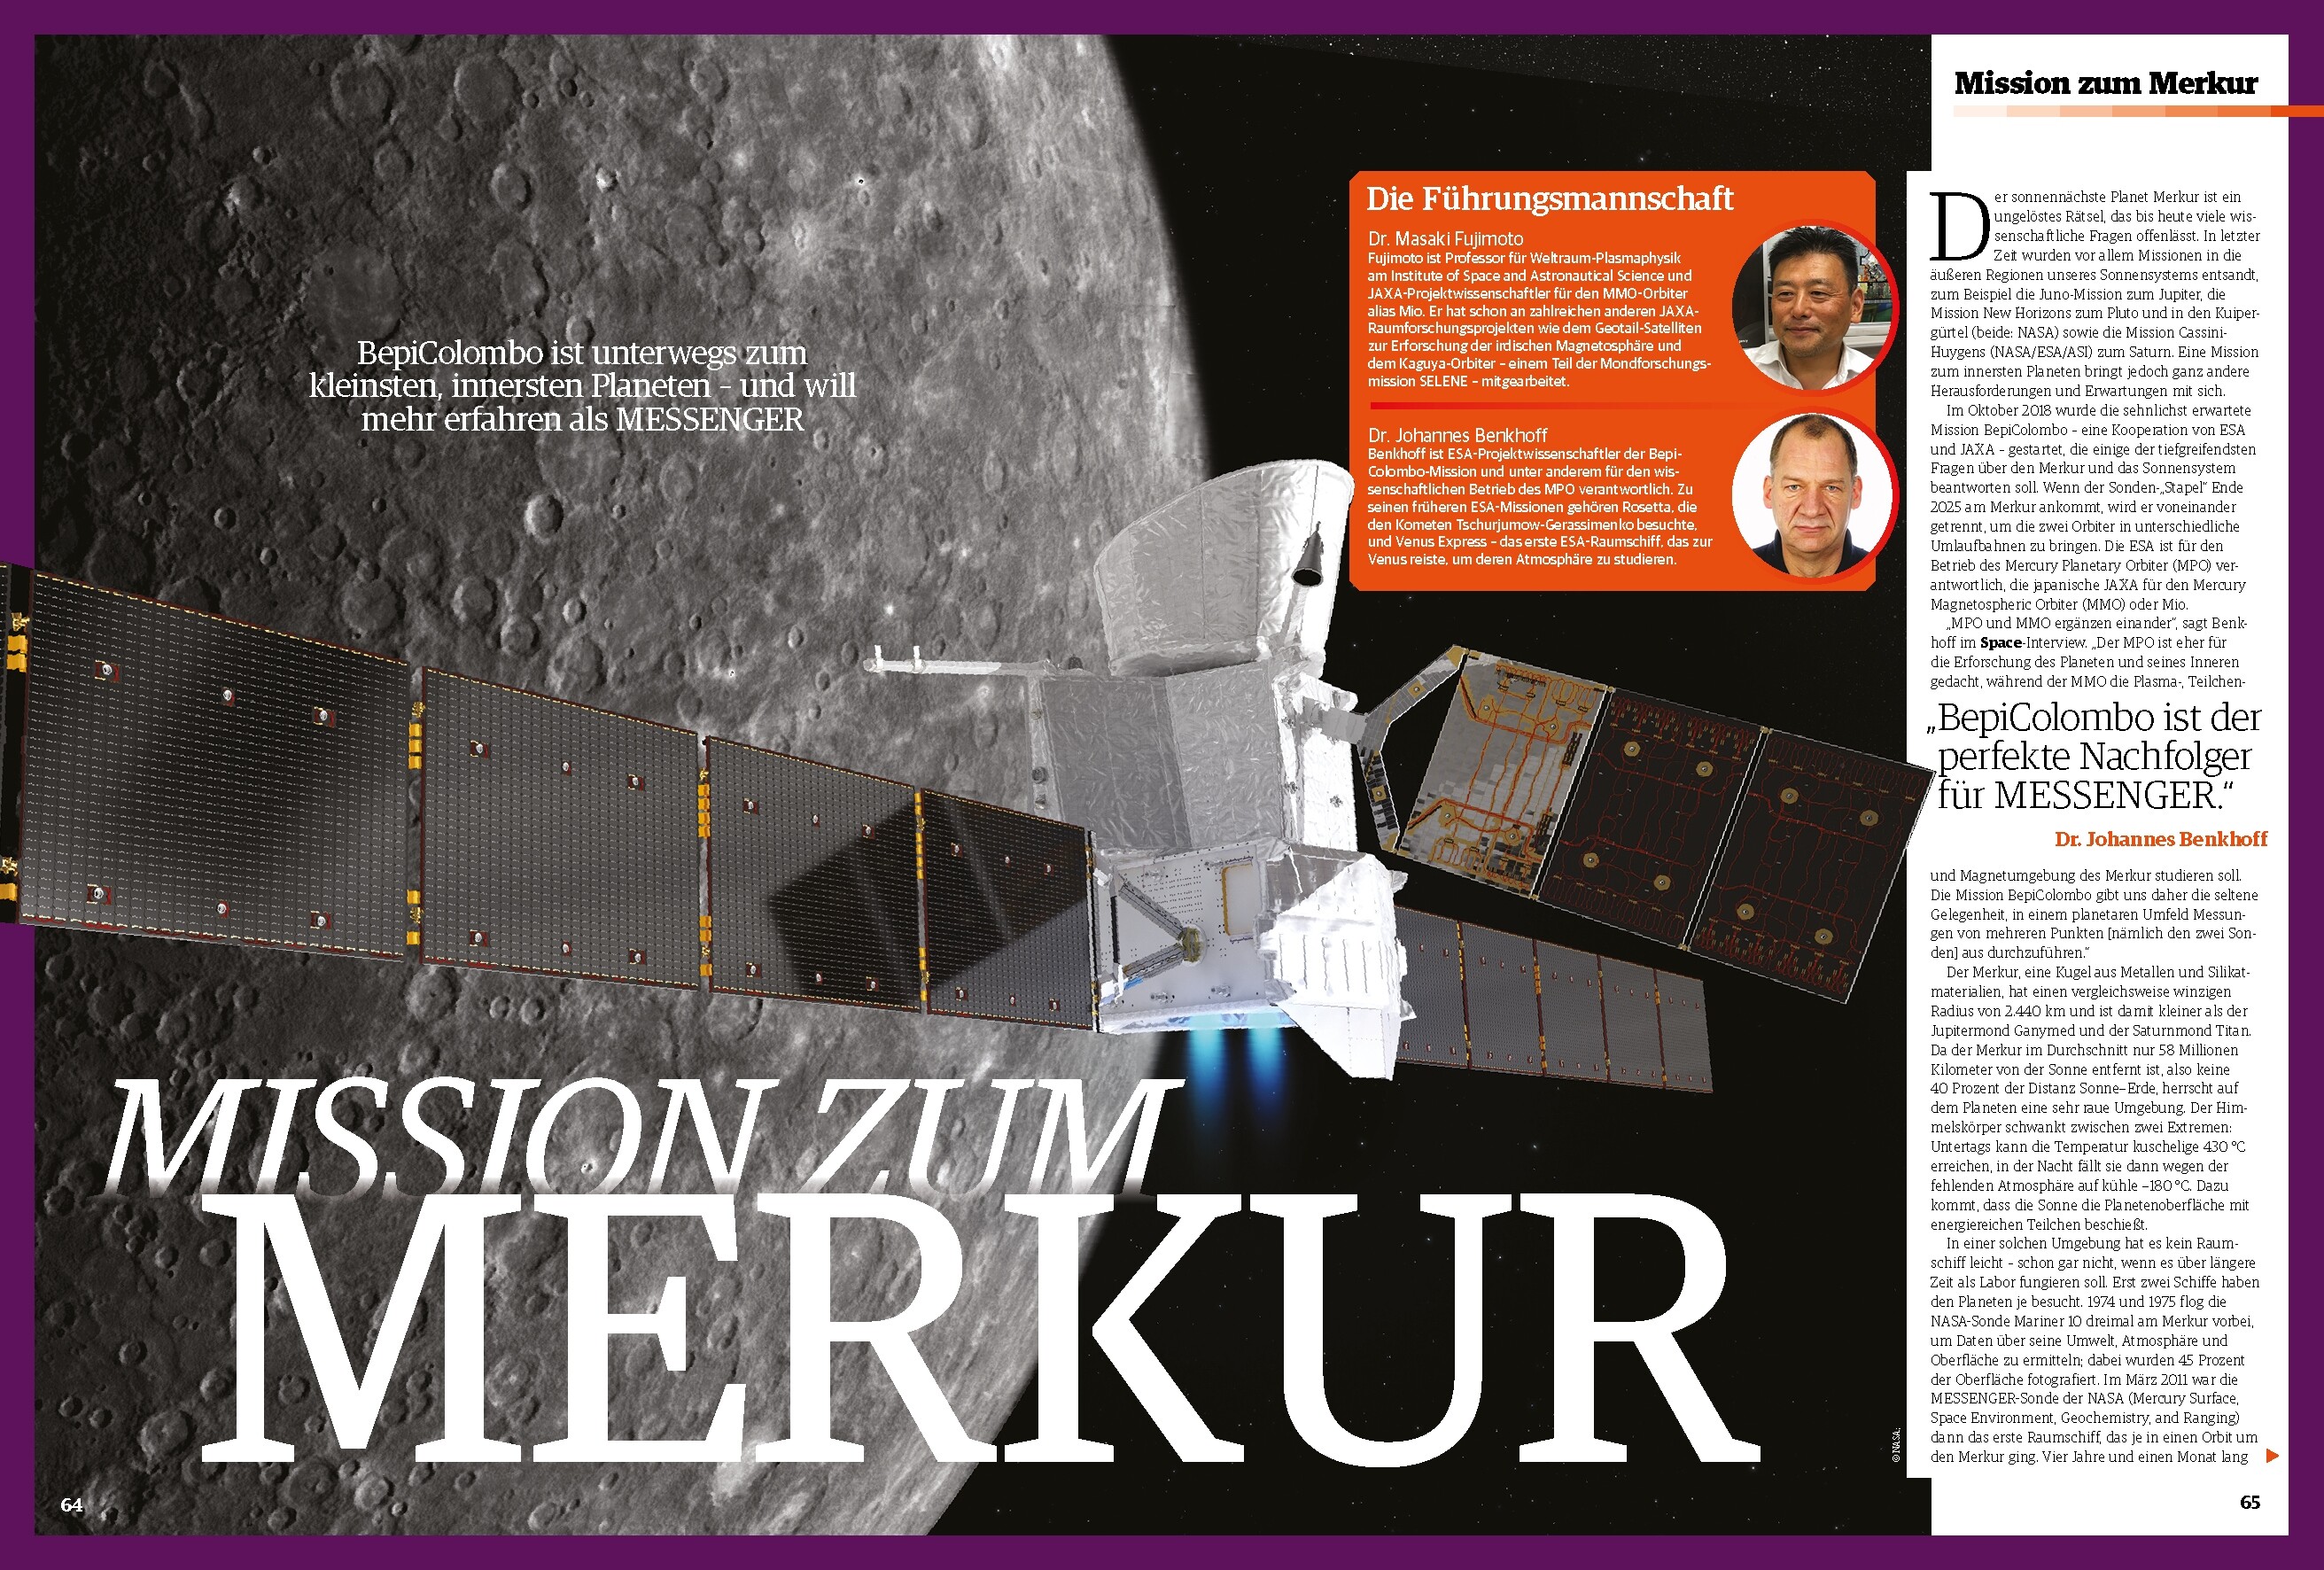 Space Weltraum Magazin 02/2019